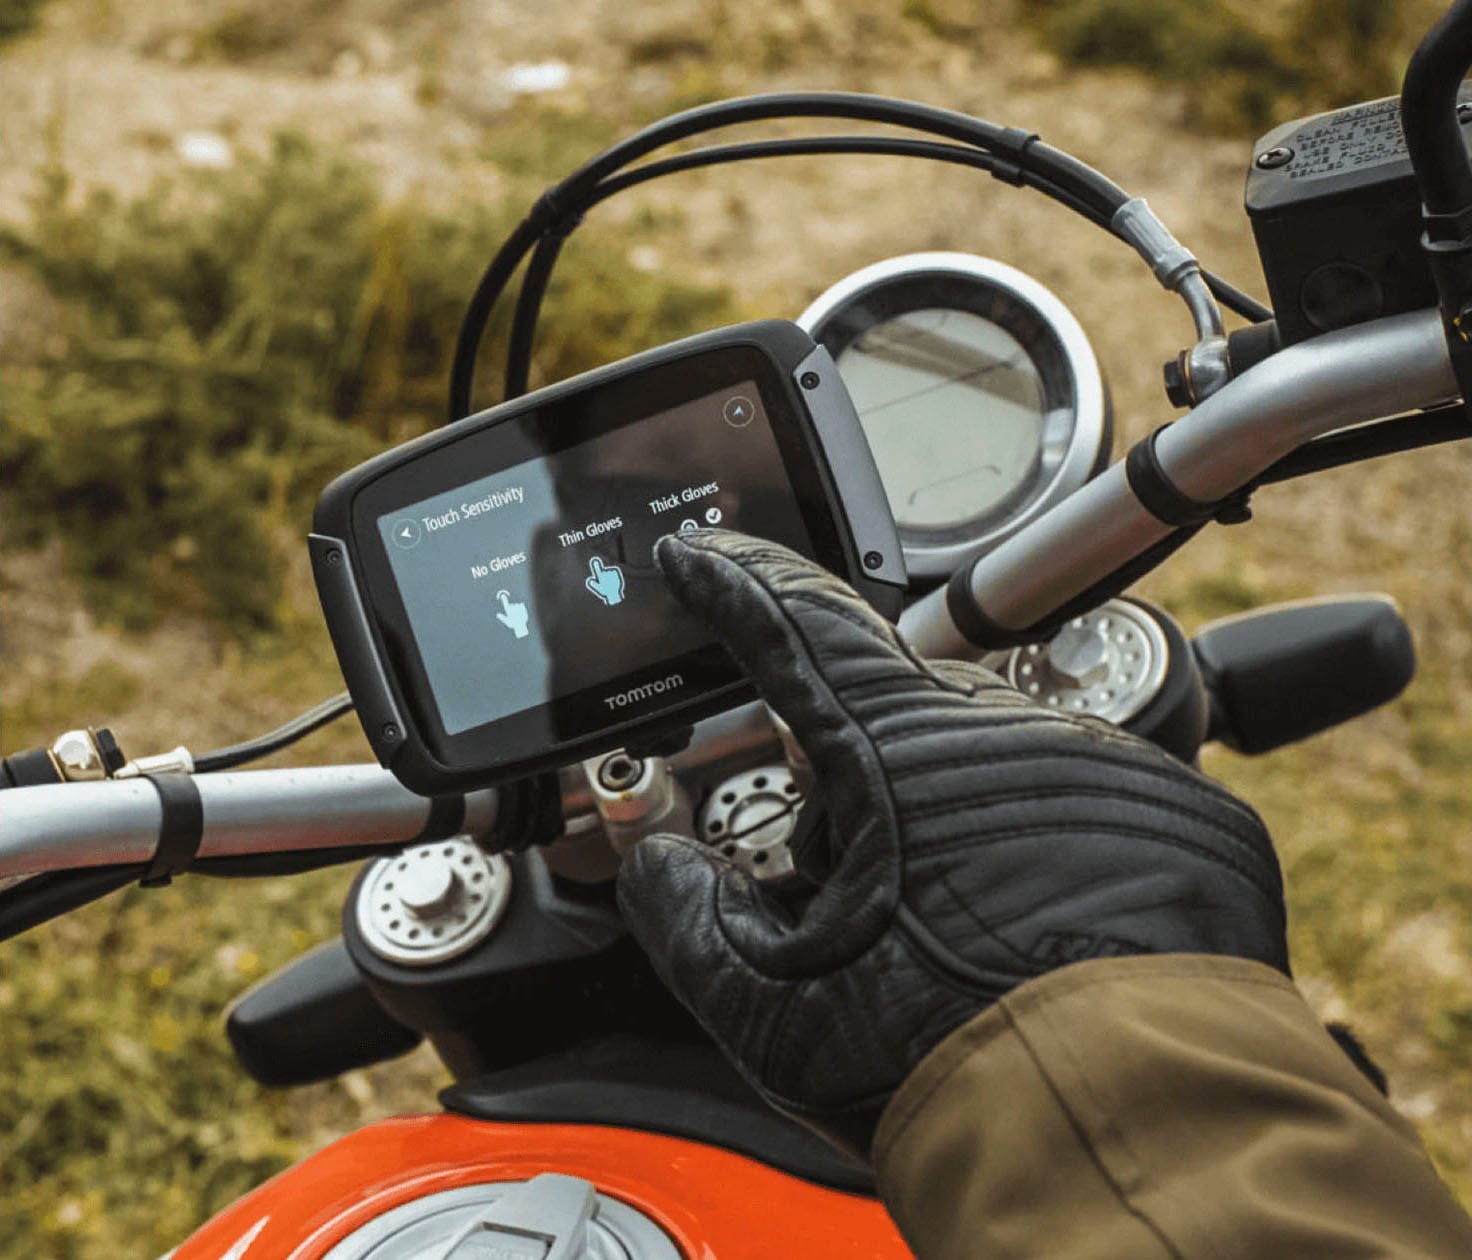 TomTom Motorrad-Navigationsgerät »Rider 500«